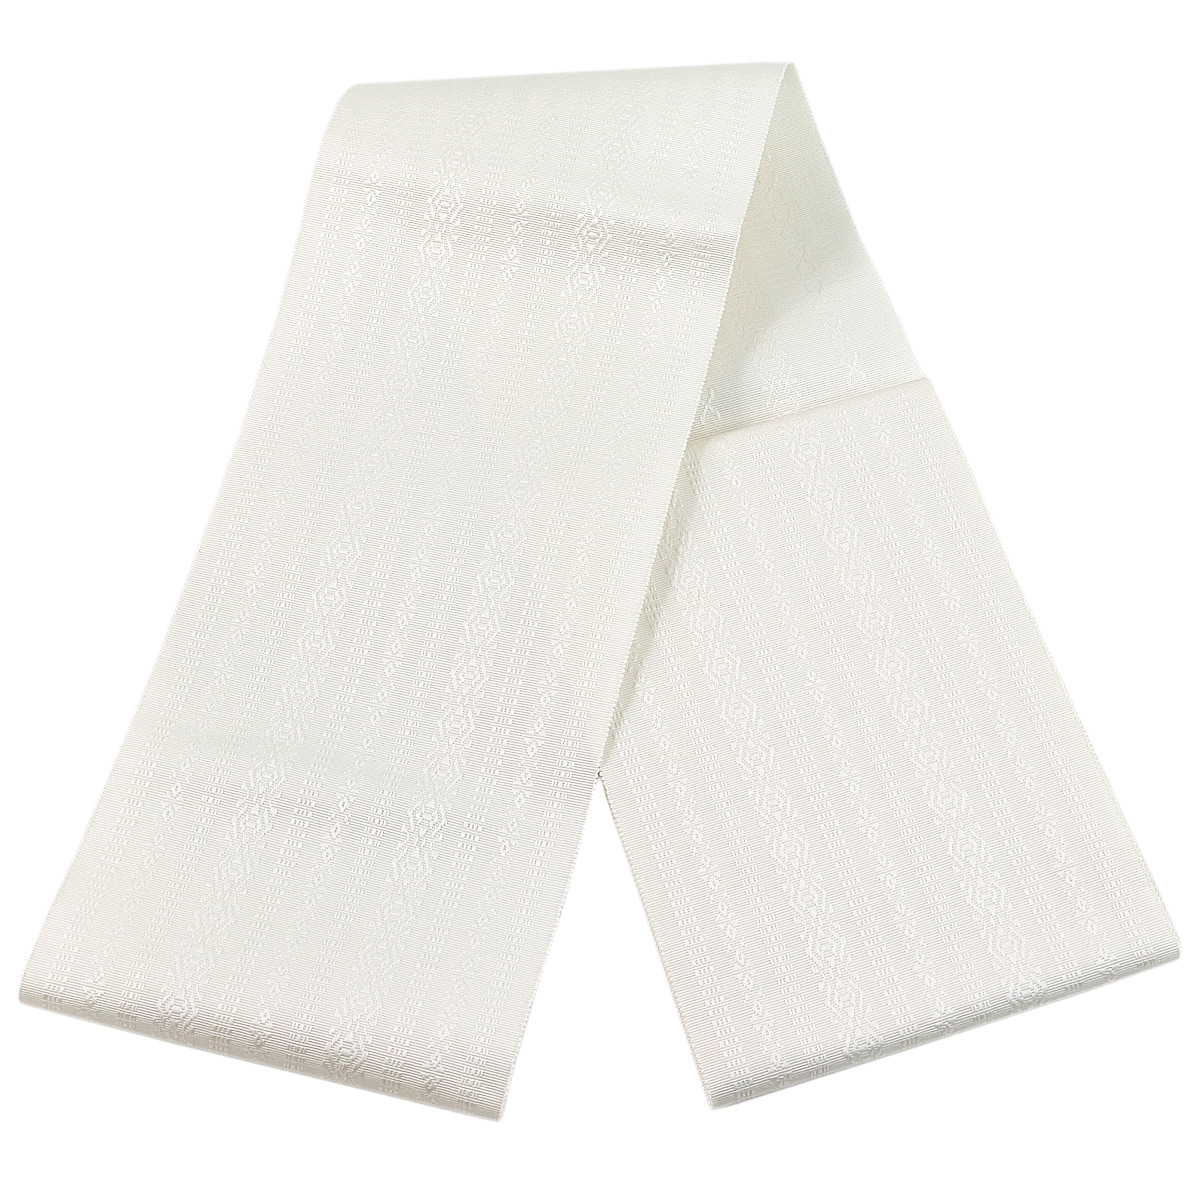 半幅帯 正絹 -10- 単帯 博多織 献上柄 白/白 絹100%